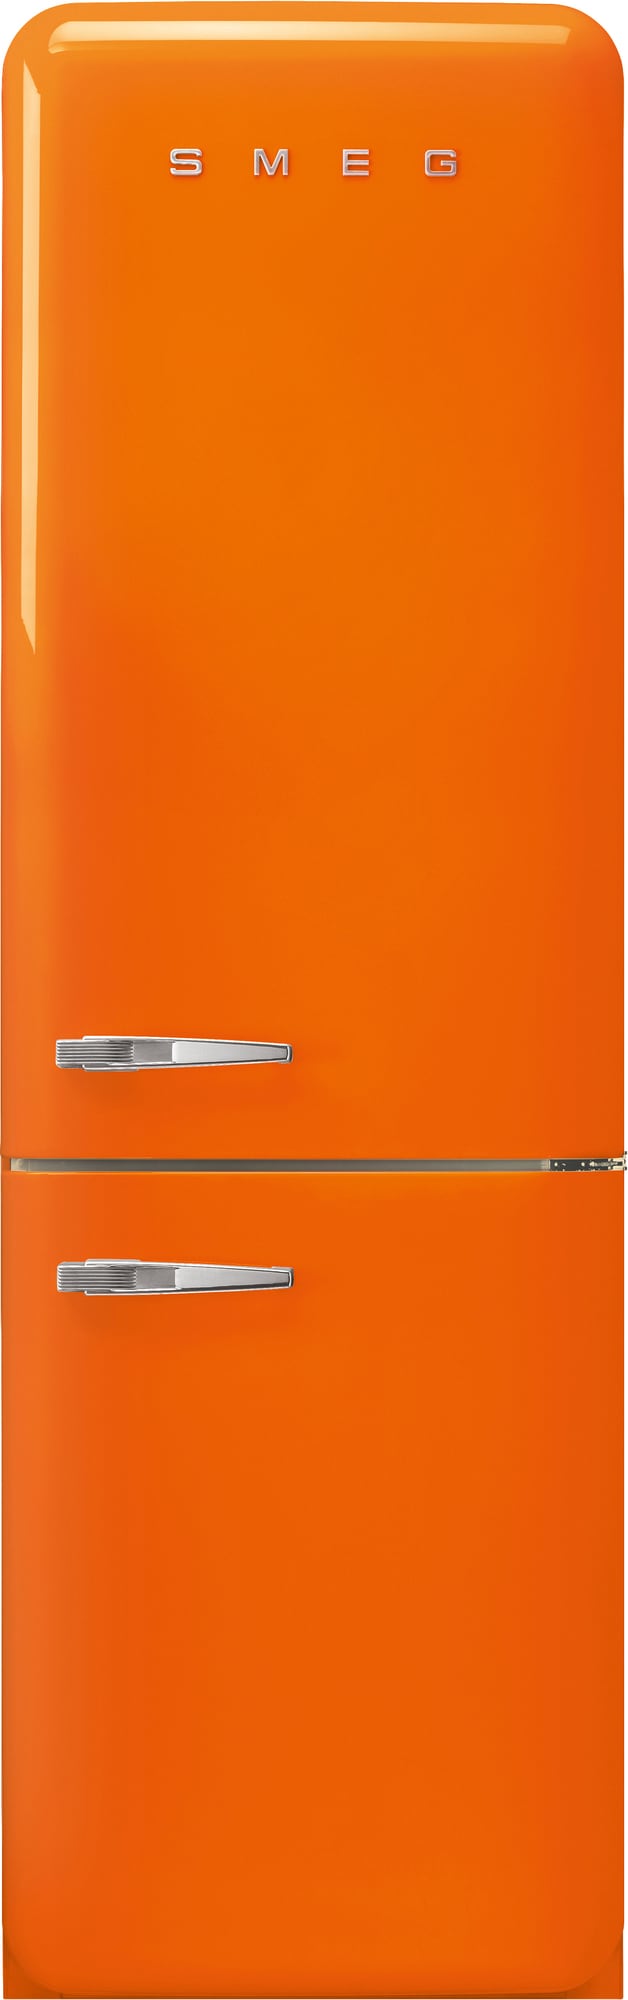 Smeg 50s Style kølefryseskab FAB32ROR5 (orange) | Øvrige hvidevarer